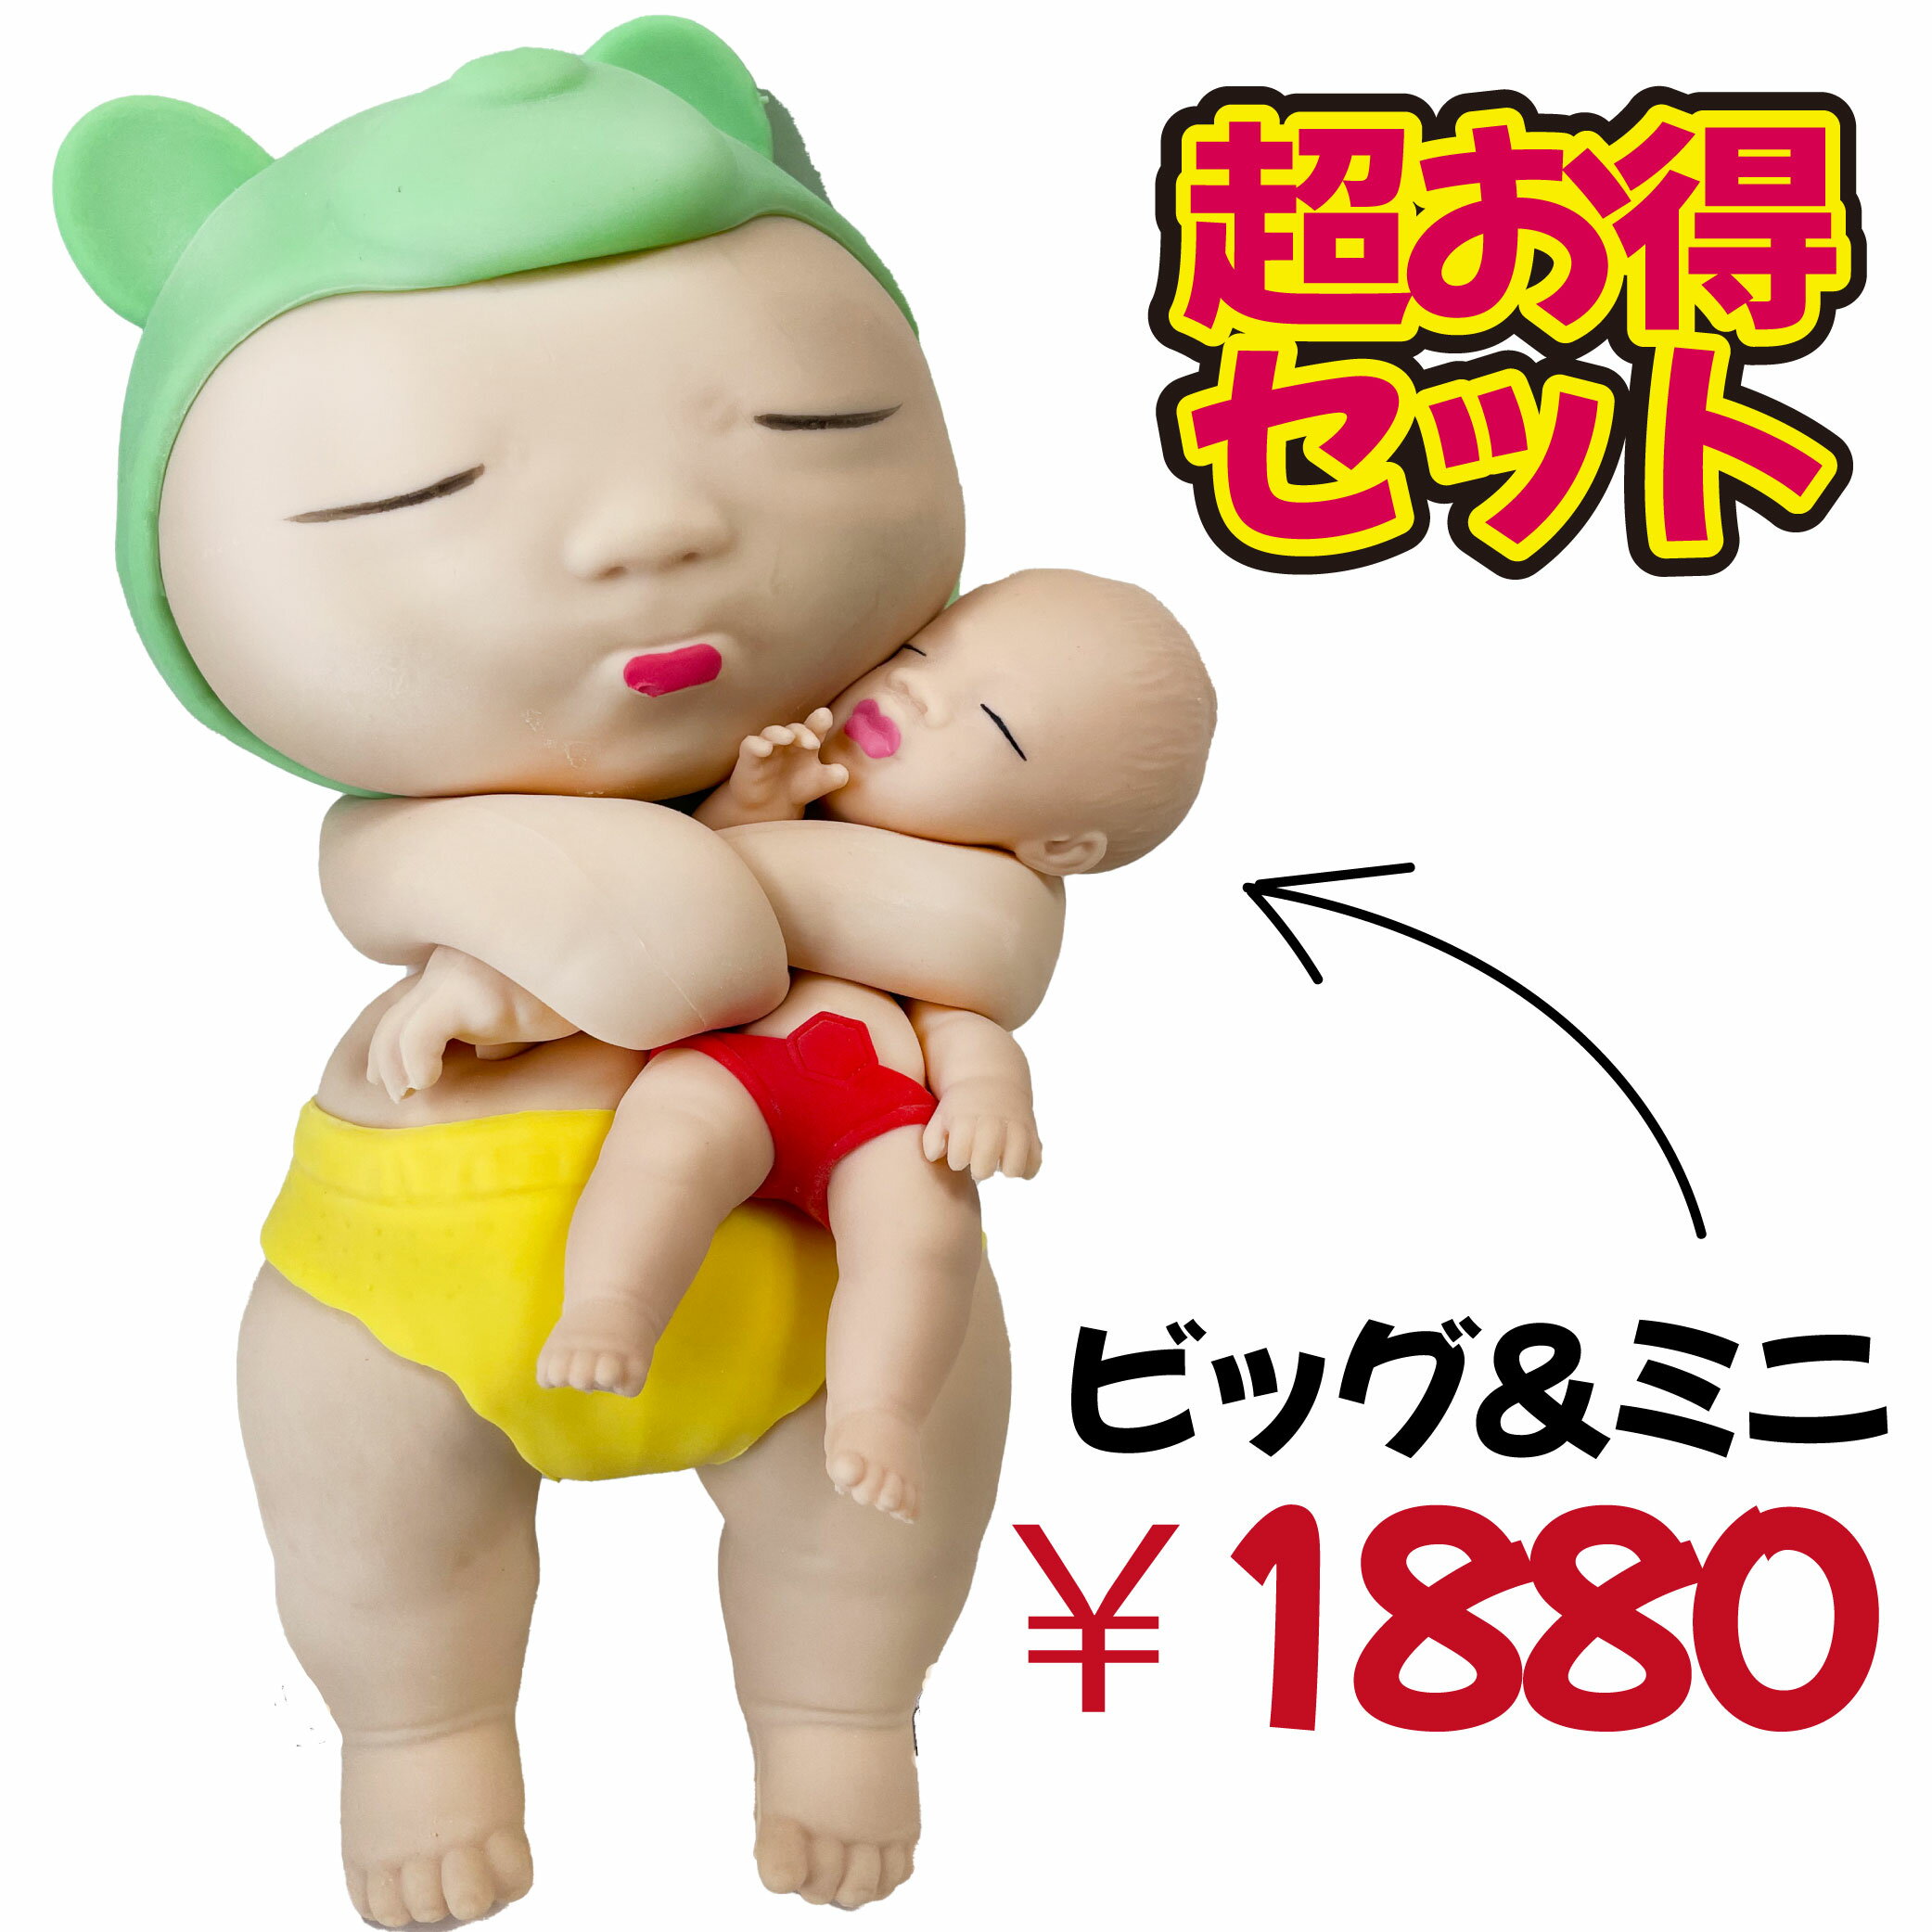 【レビューでプッシュポップをプレゼント 】 アグリーベイビー 伸びる赤ちゃん 赤ちゃん アグリーベイビーズ ベイビー スクイーズ 服 ビッグ BIG big ミニ ミニサイズ 大きい 大 セット 人形 …